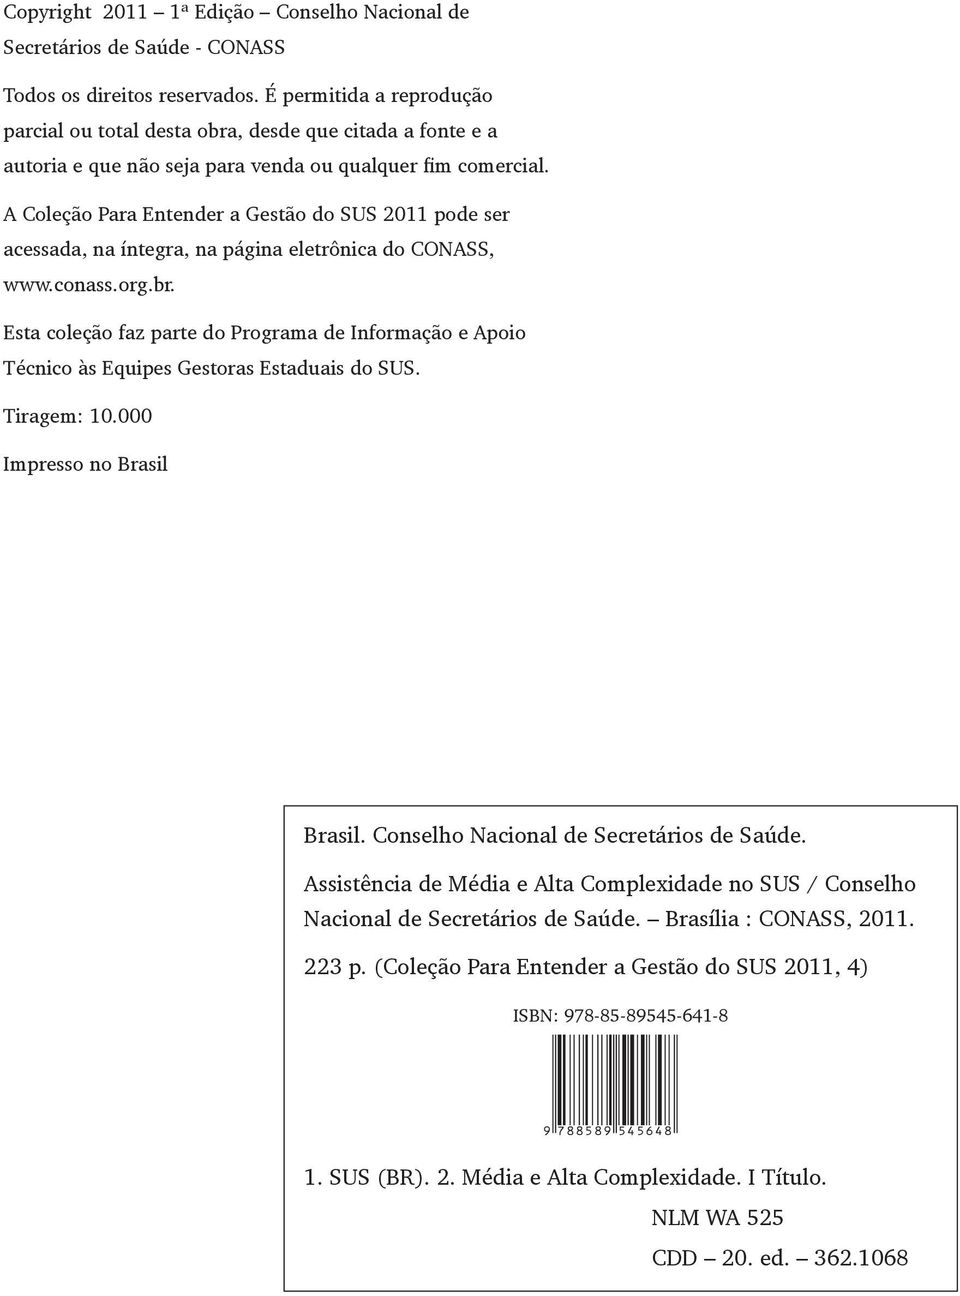 A Coleção Para Entender a Gestão do SUS 2011 pode ser acessada, na íntegra, na página ele trônica do CONASS, www.conass.org.br.